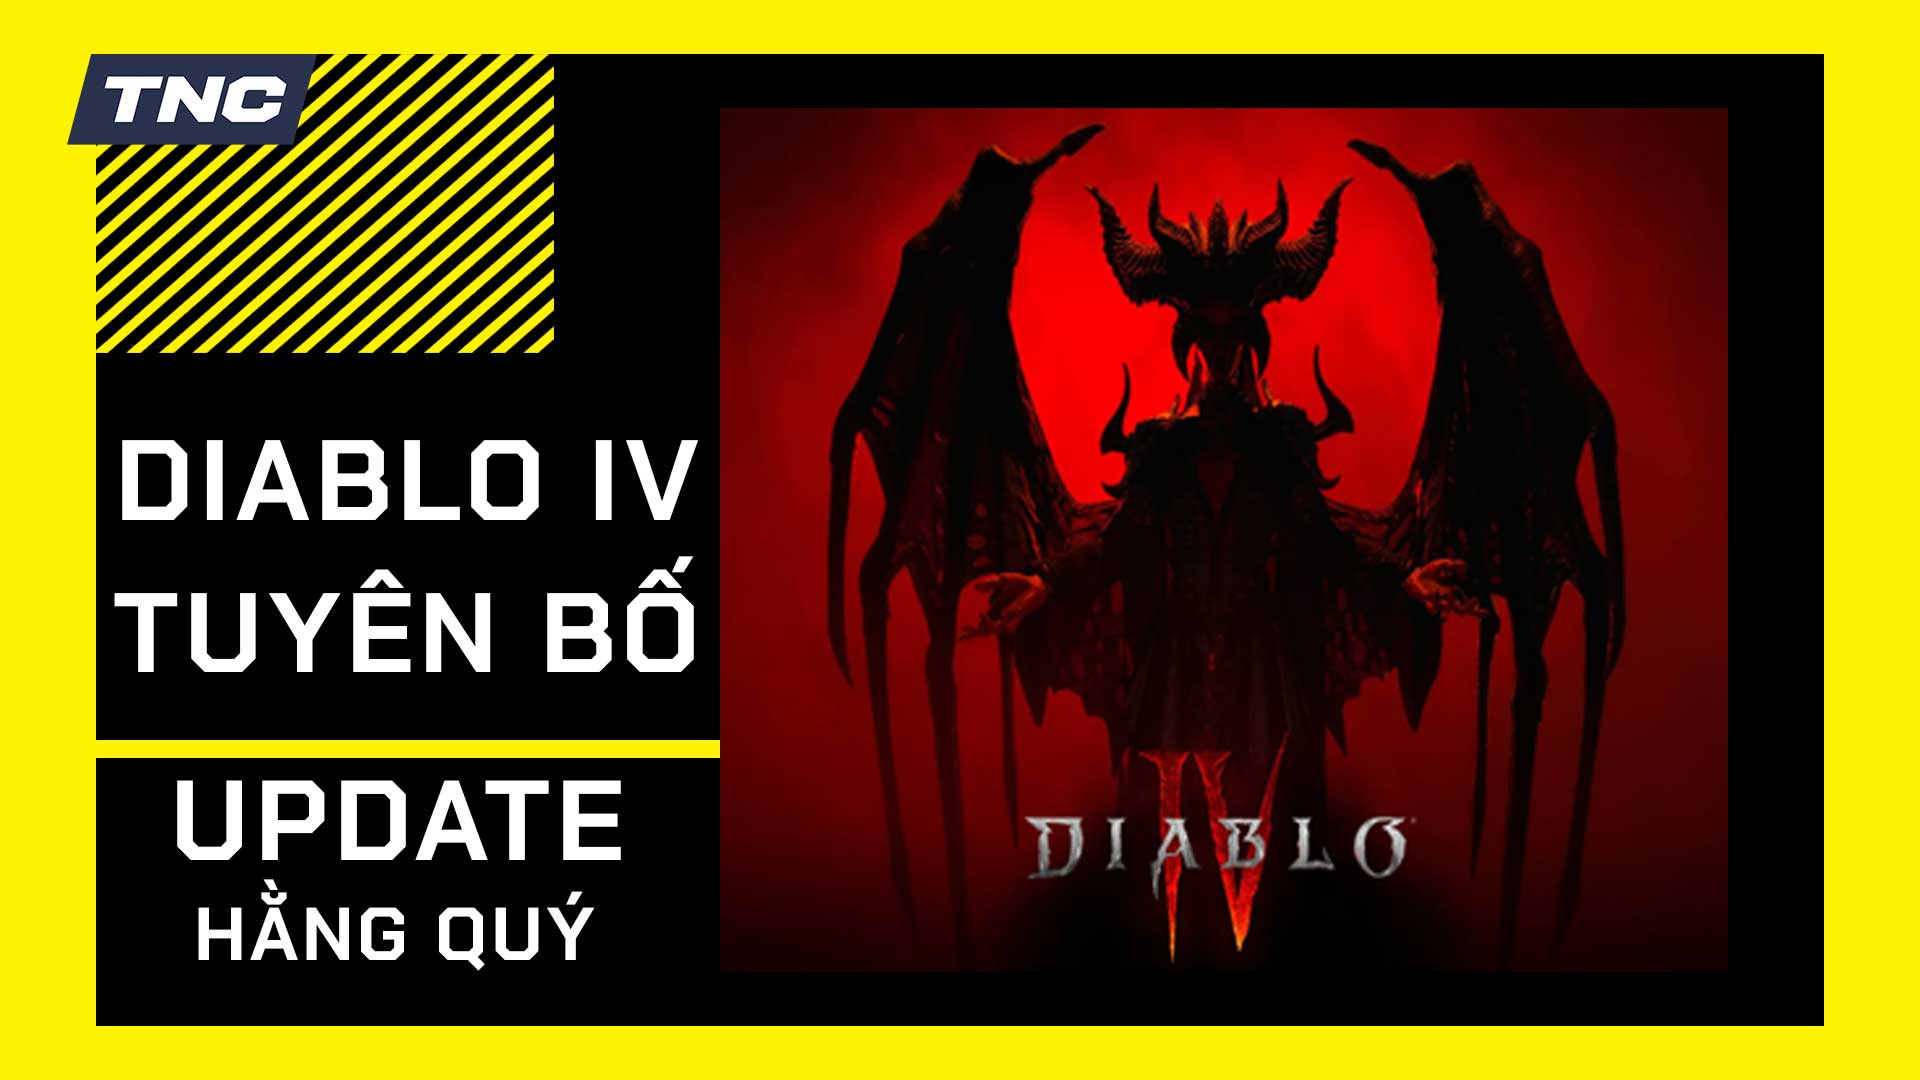 Anh em Game Thủ sợ không chơi hết vì Diablo IV sẽ update story hằng quý